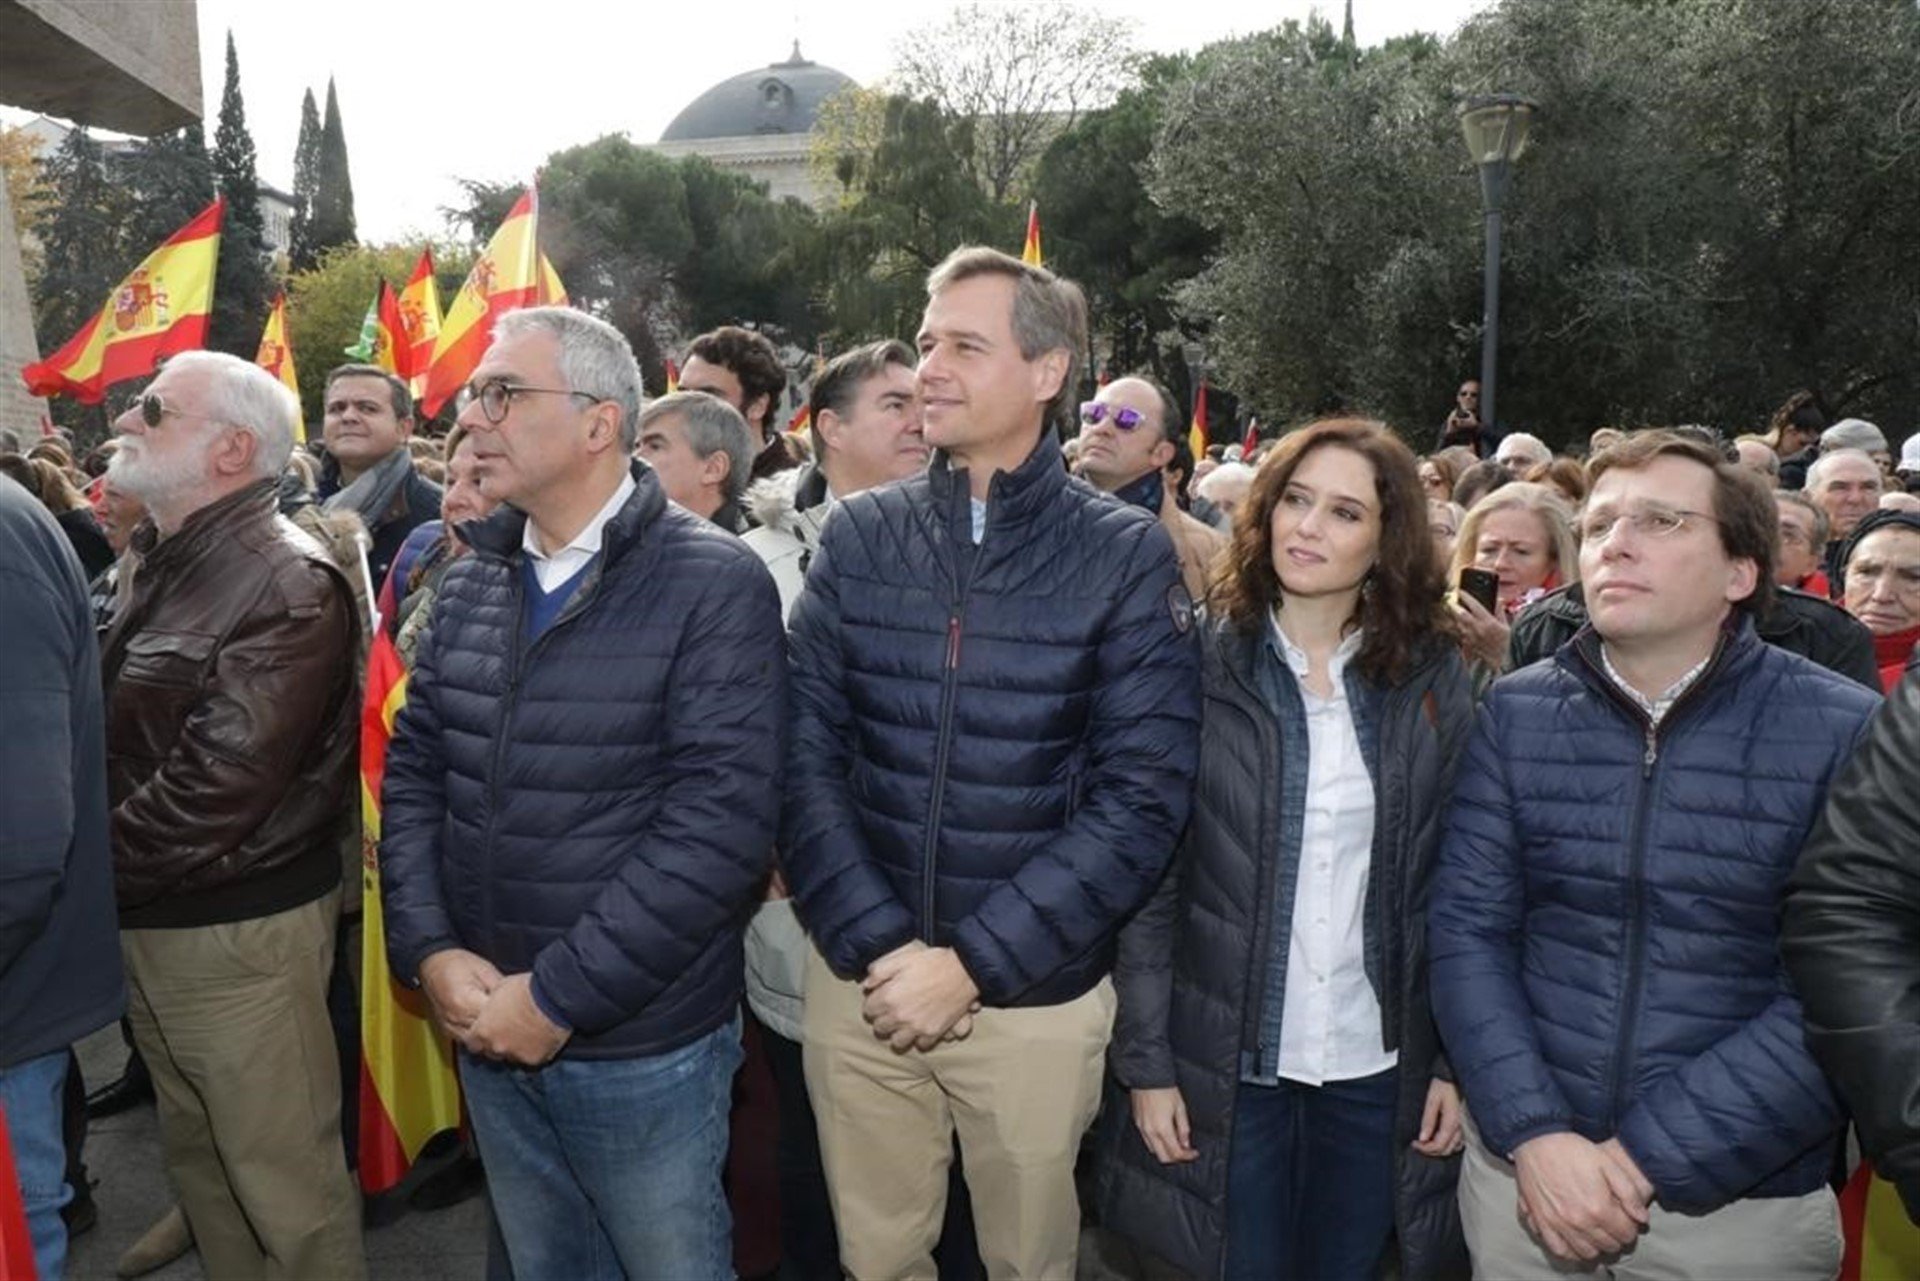 Dirigents del PP acudeixen a la manifestació ultra de Madrid